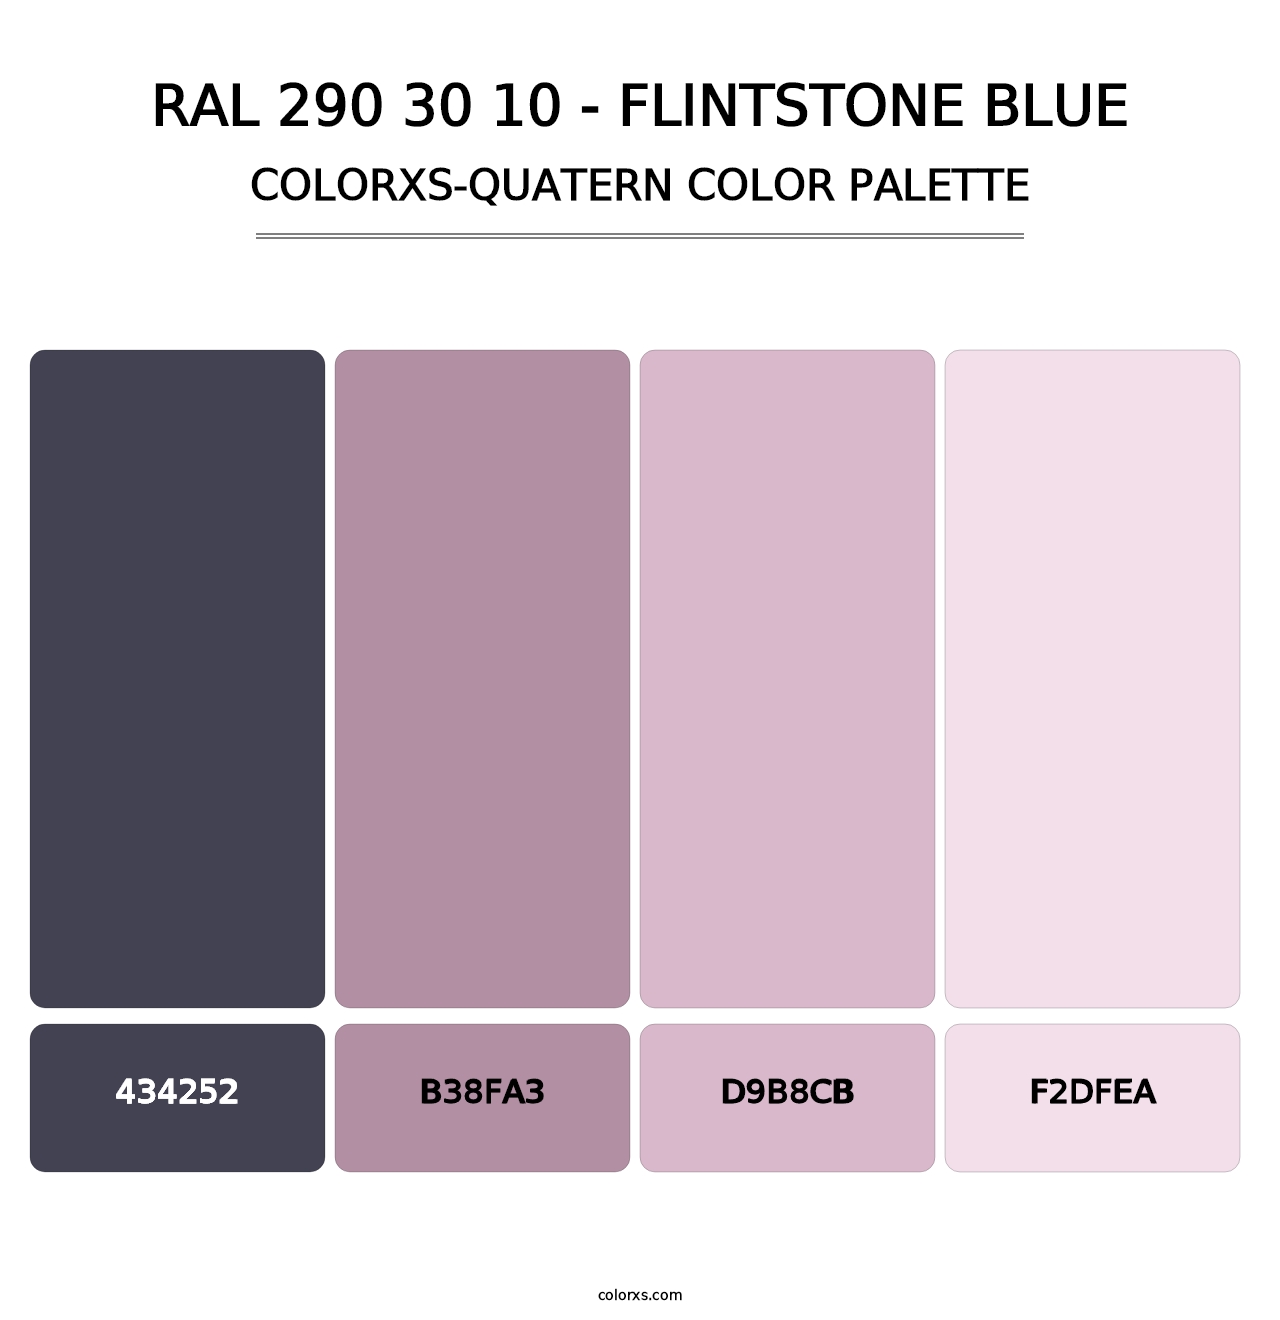 RAL 290 30 10 - Flintstone Blue - Colorxs Quatern Palette